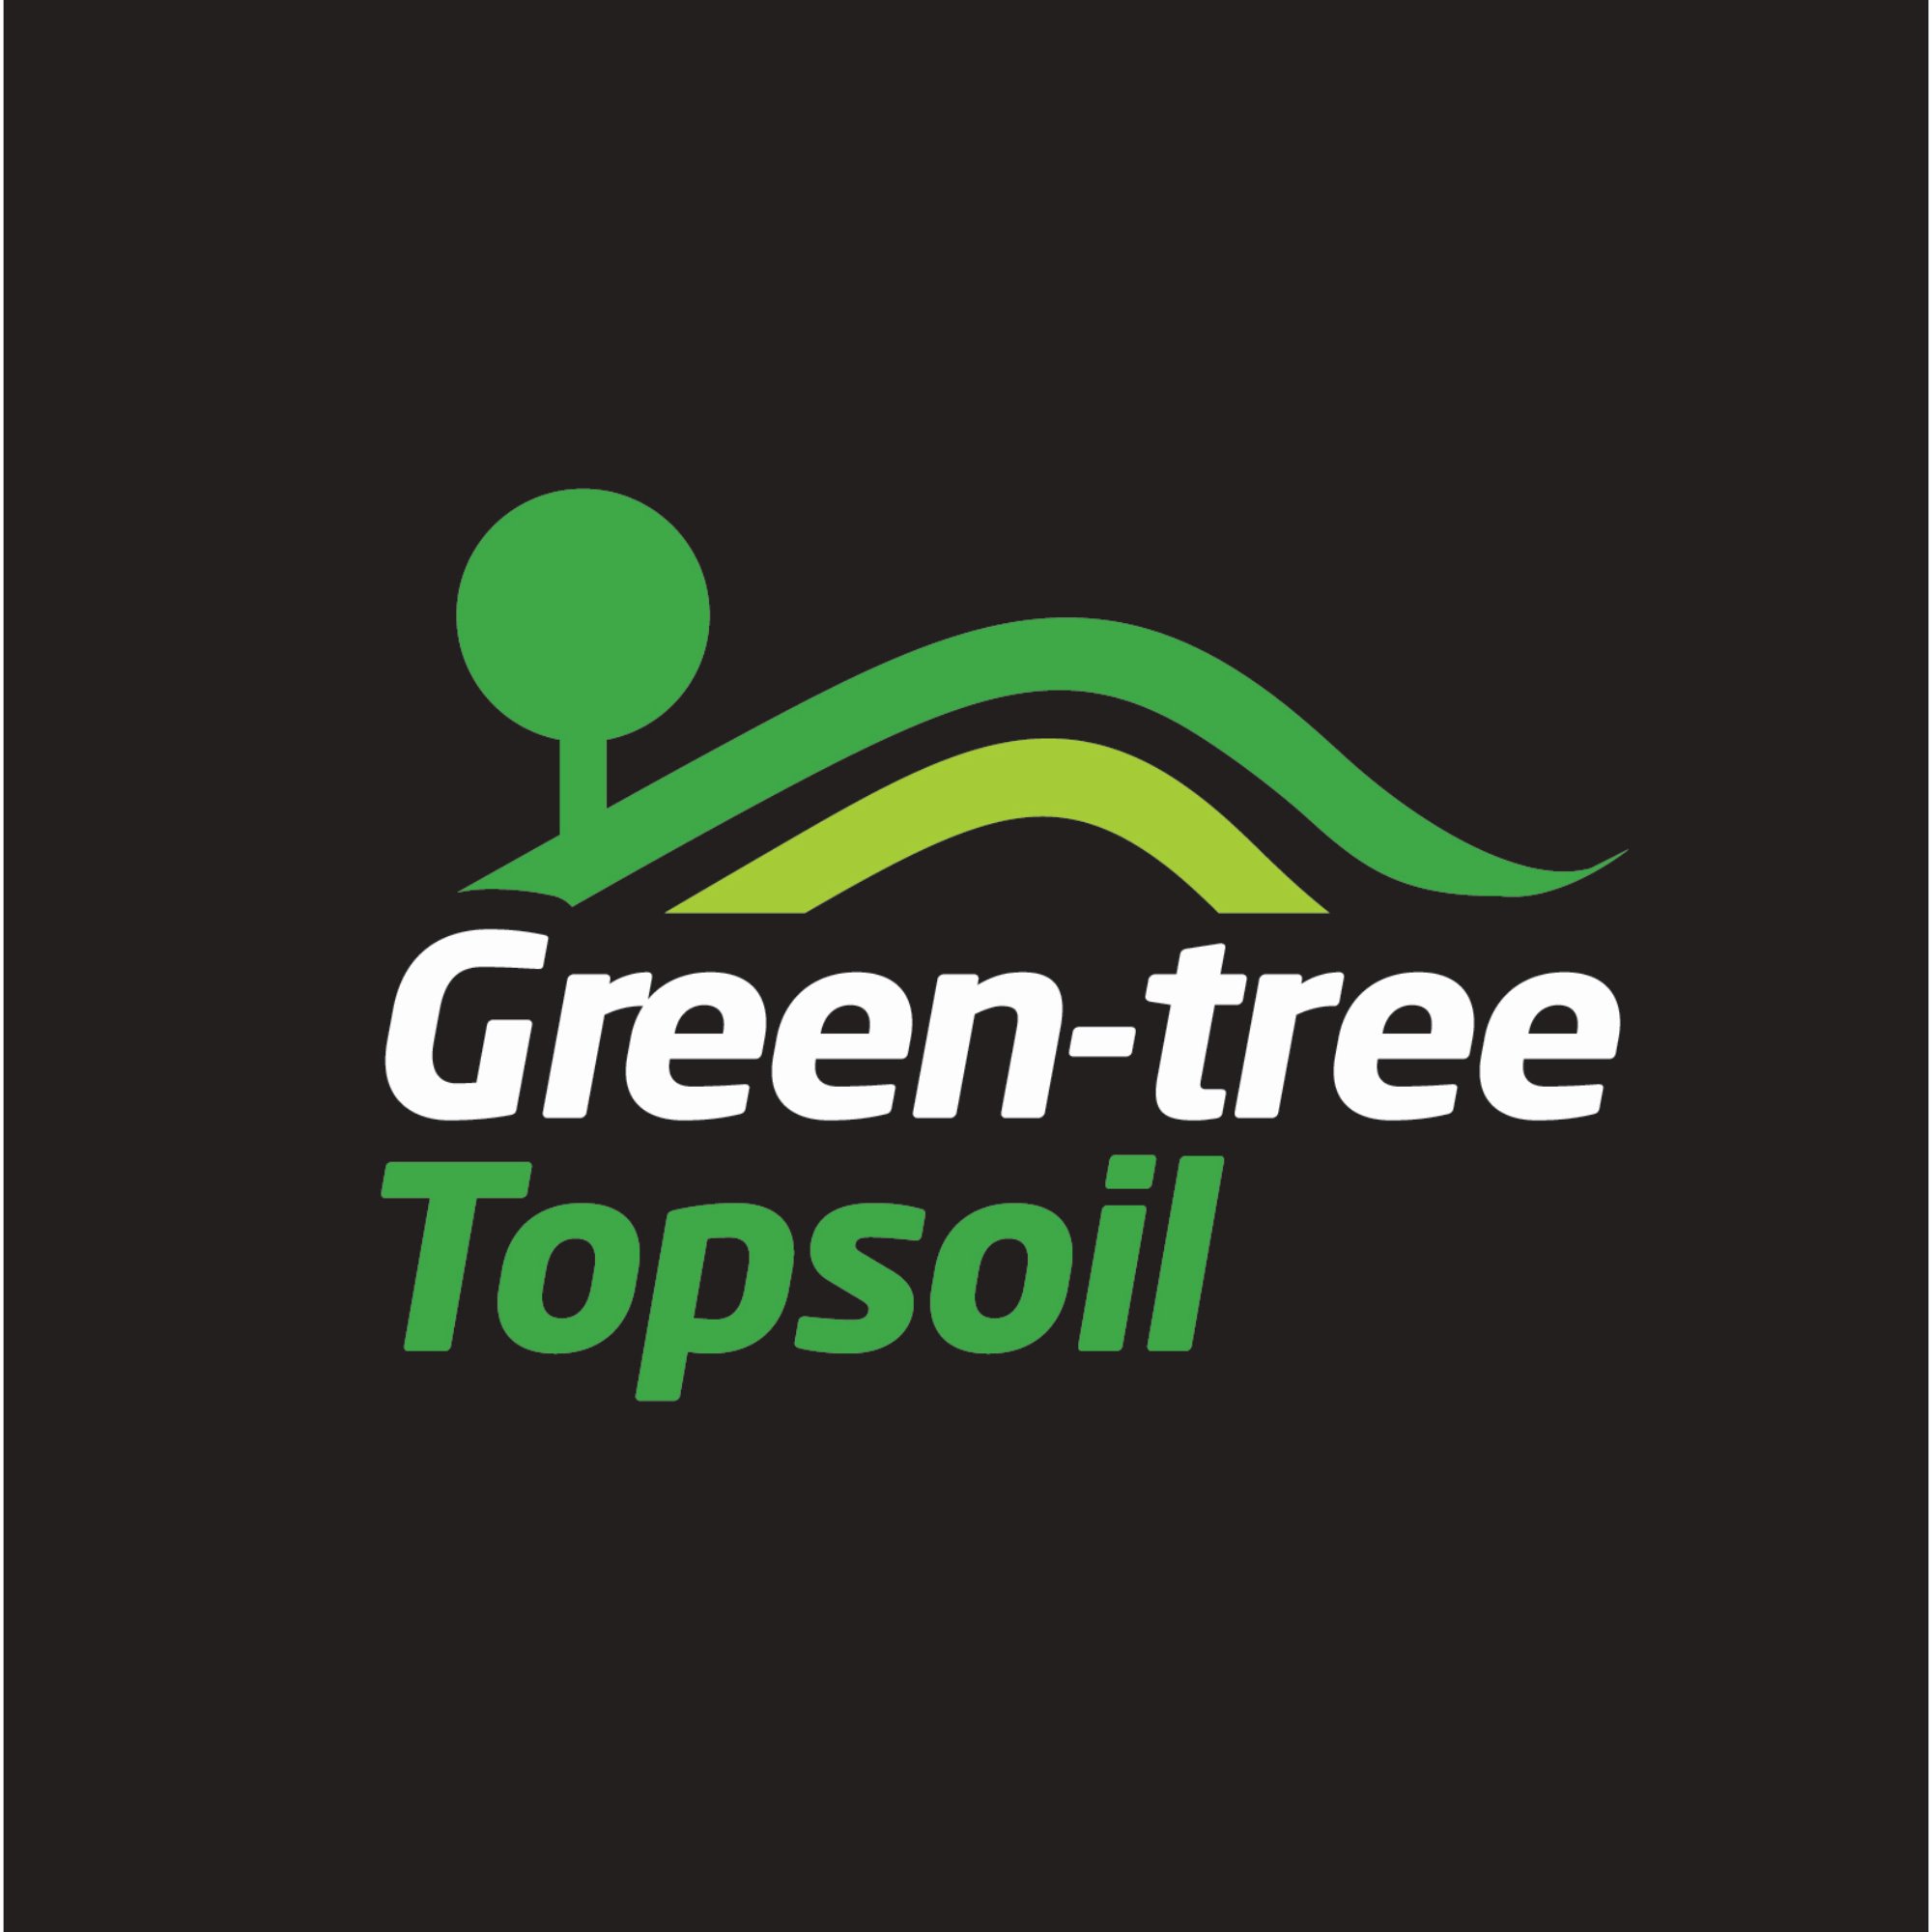 Green-tree Specialist Soils